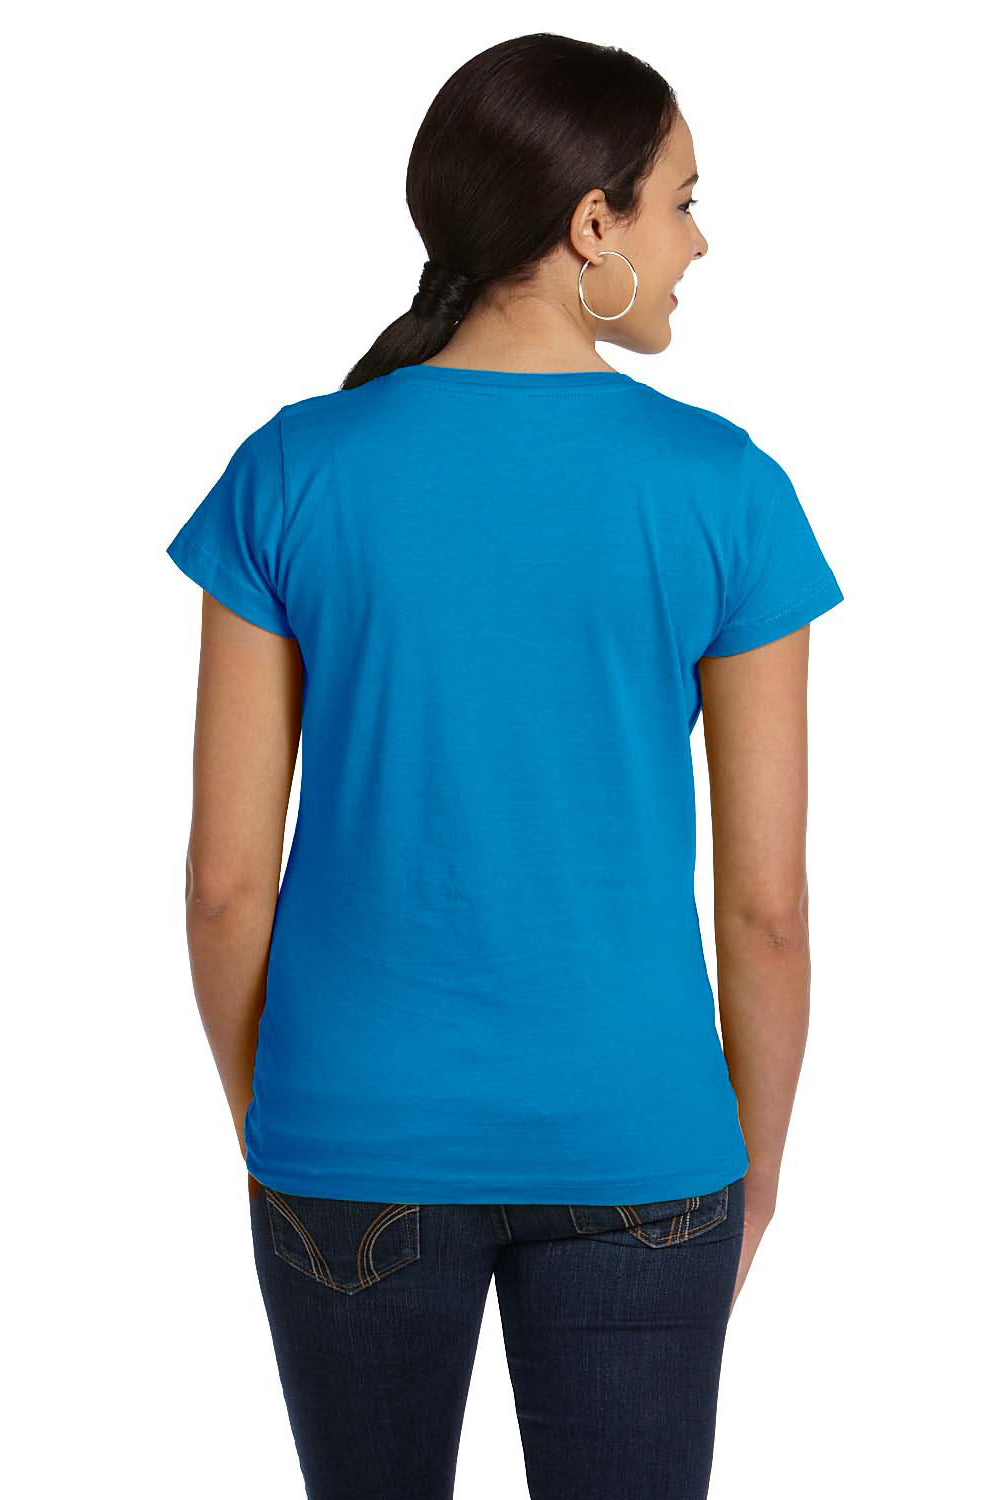 LAT 3516 Womens Fine Jersey Short Sleeve Crewneck T-Shirt Cobalt Blue Back